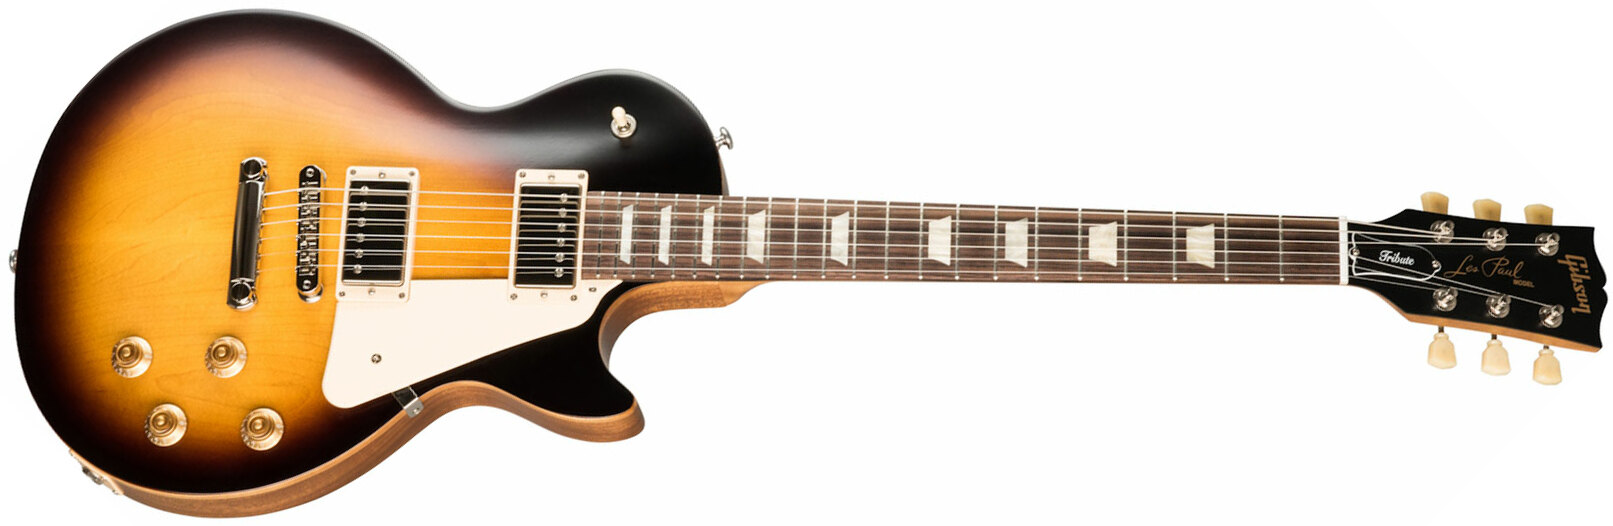 Gibson Les Paul Tribute Modern 2h Ht Rw - Satin Tobacco Burst - Guitare Électrique Single Cut - Main picture